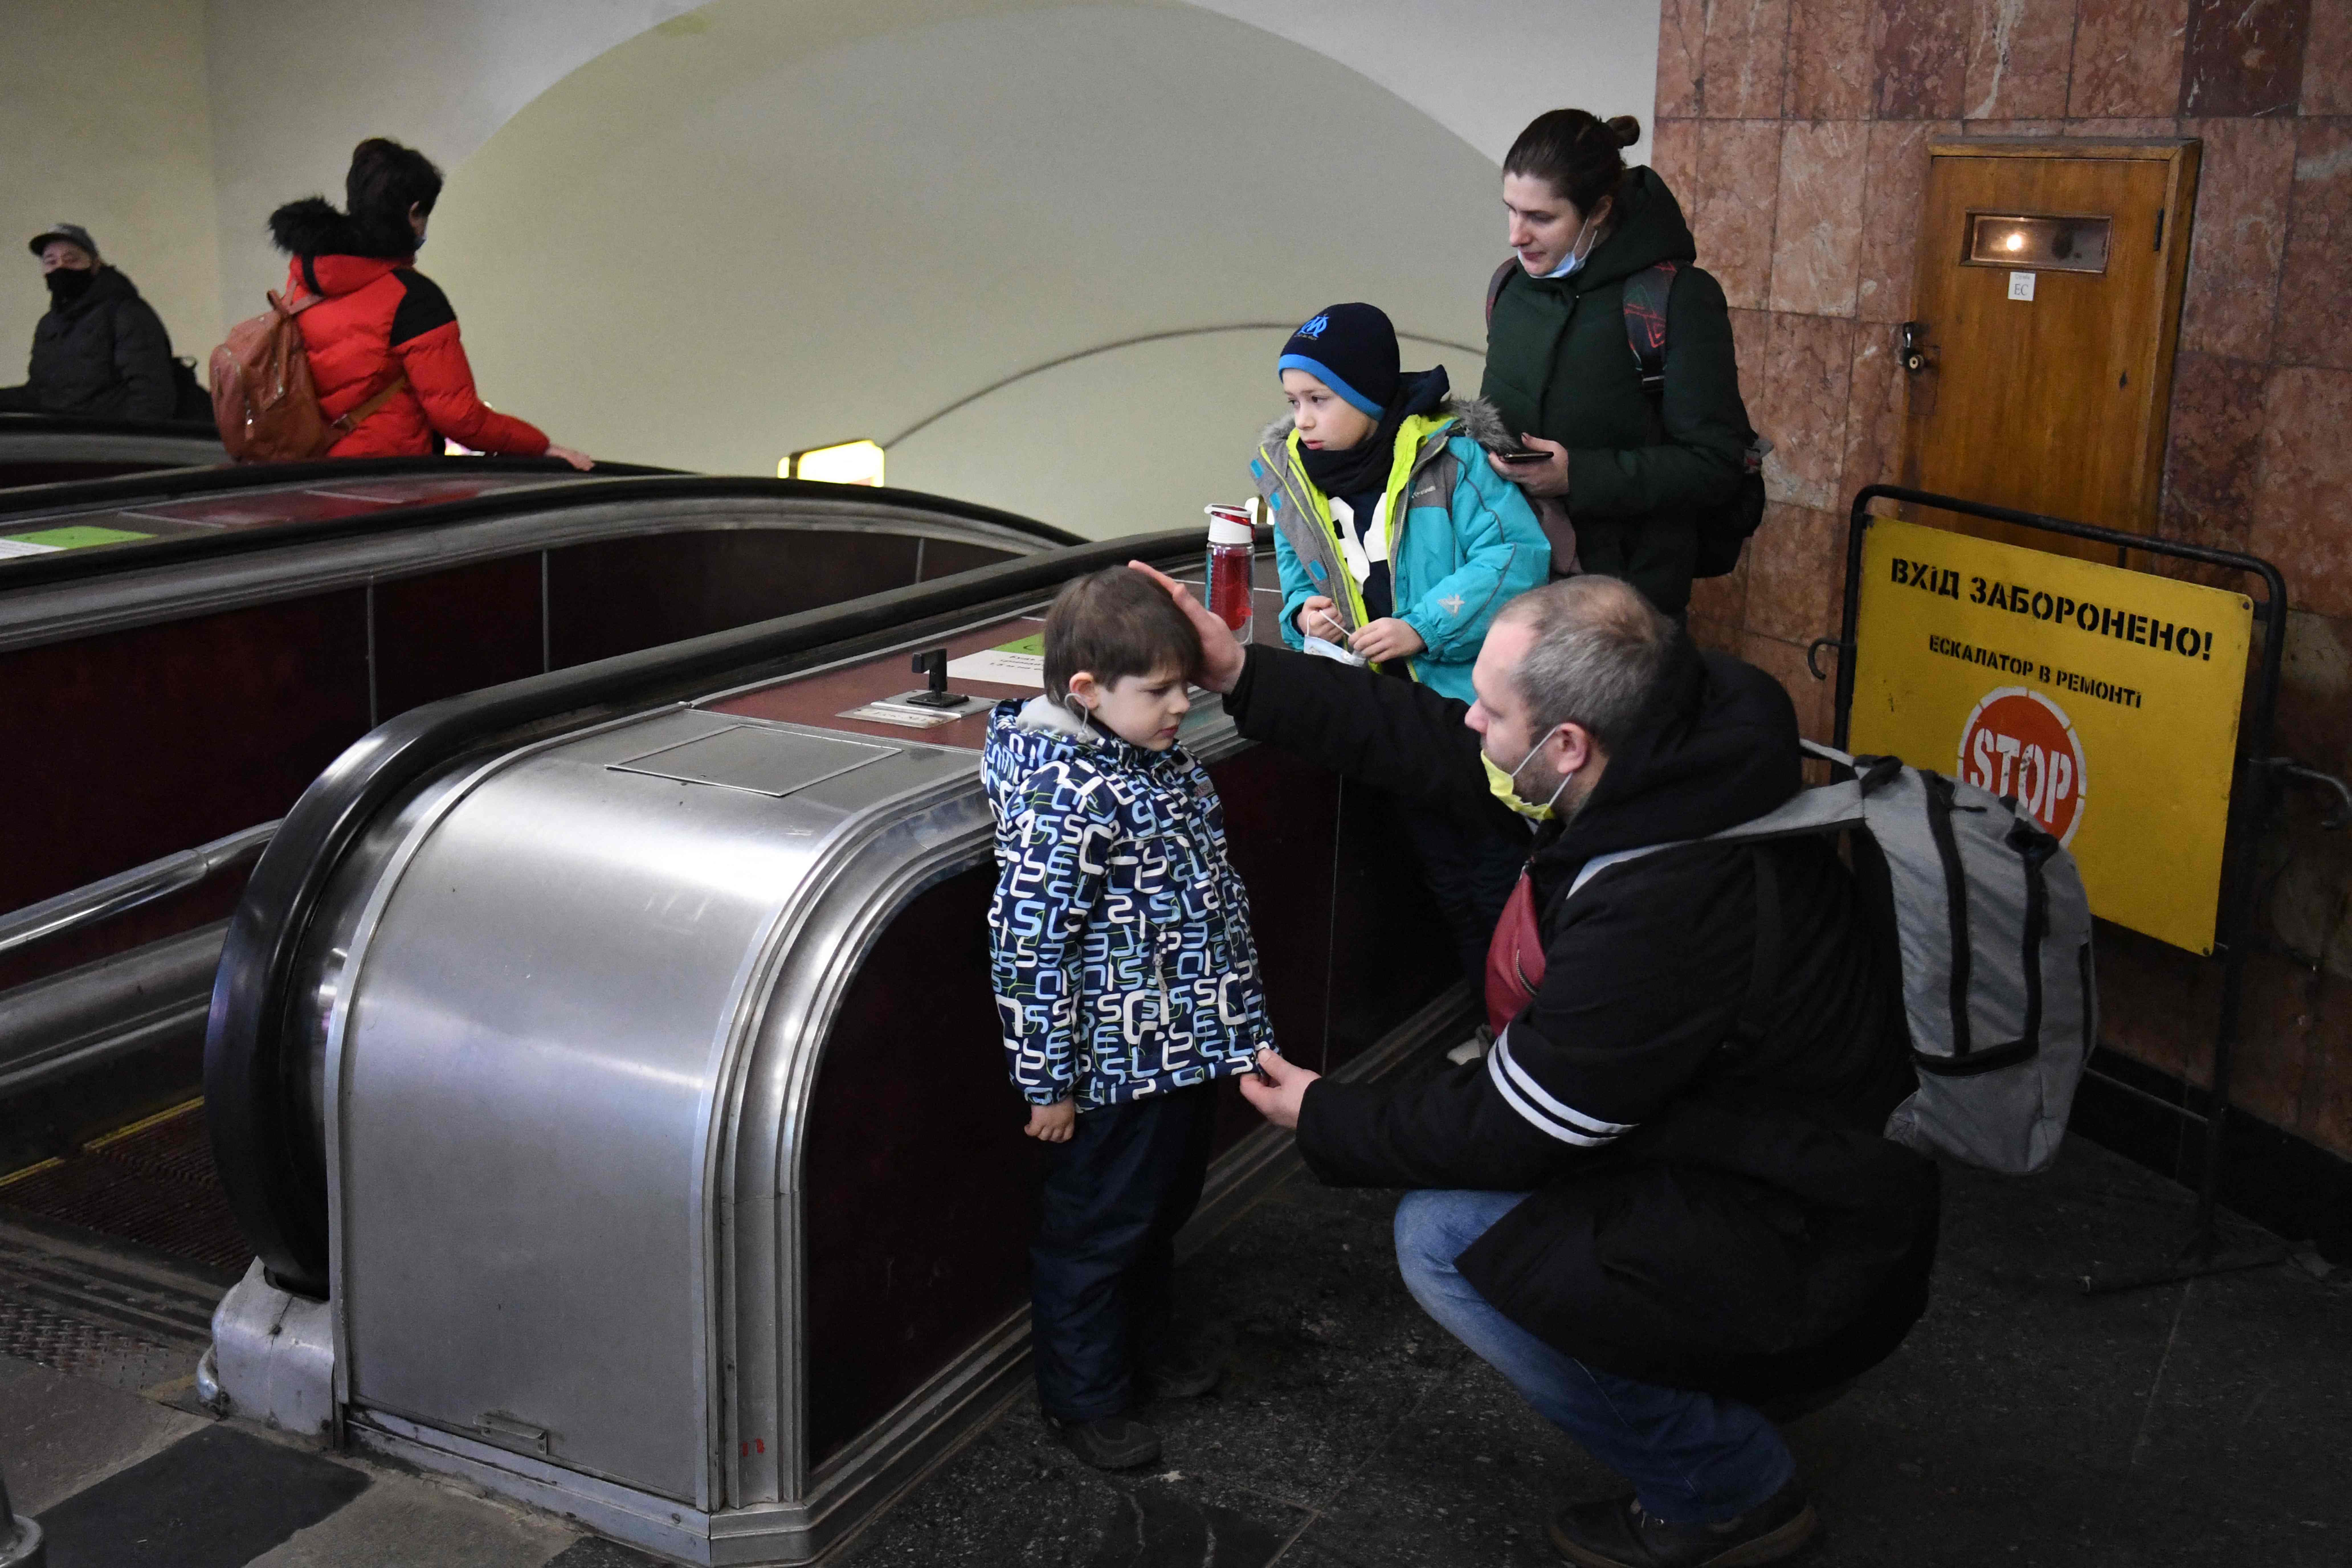 Un padre ucraniano tranquiliza a su hijo mientras la familia se refugia en una estación de metro de Kiev